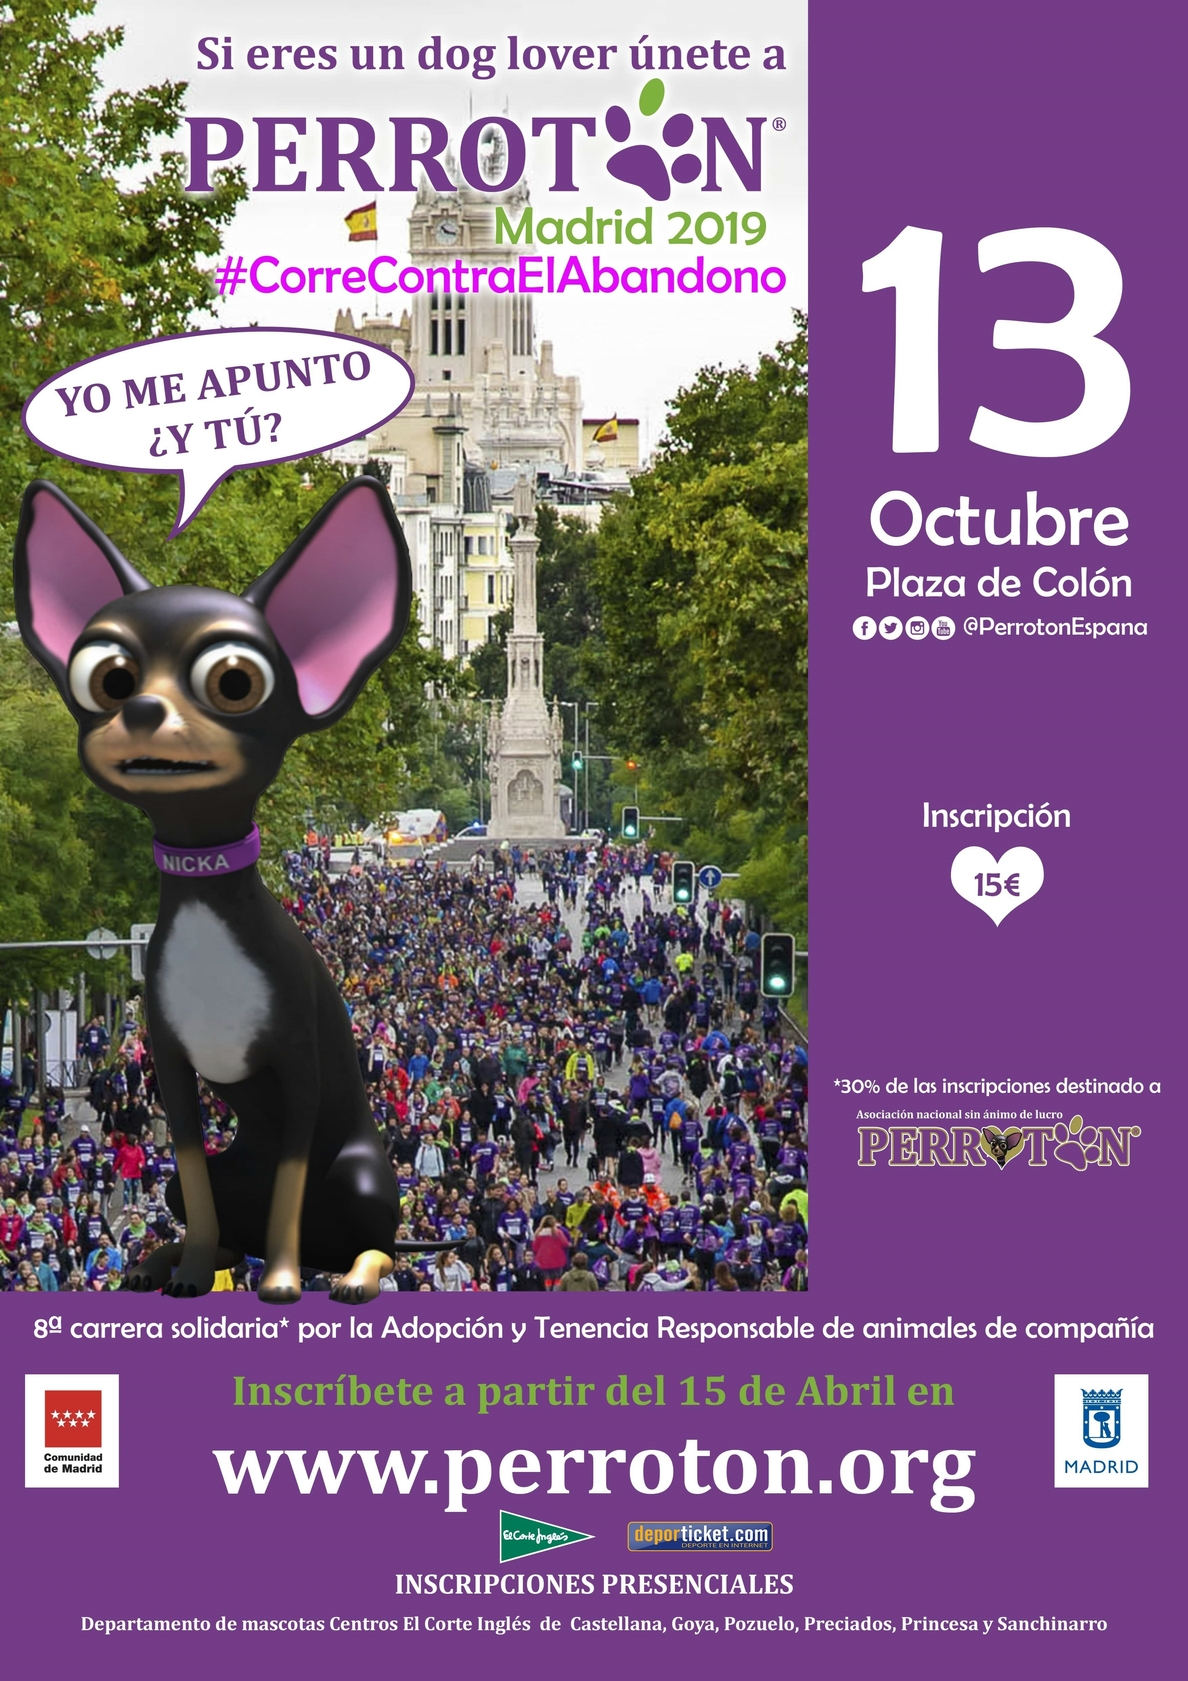 Perrotón Madrid organiza una carrera solidaria en octubre para promover y fomentar la adopción y tenencia responsable